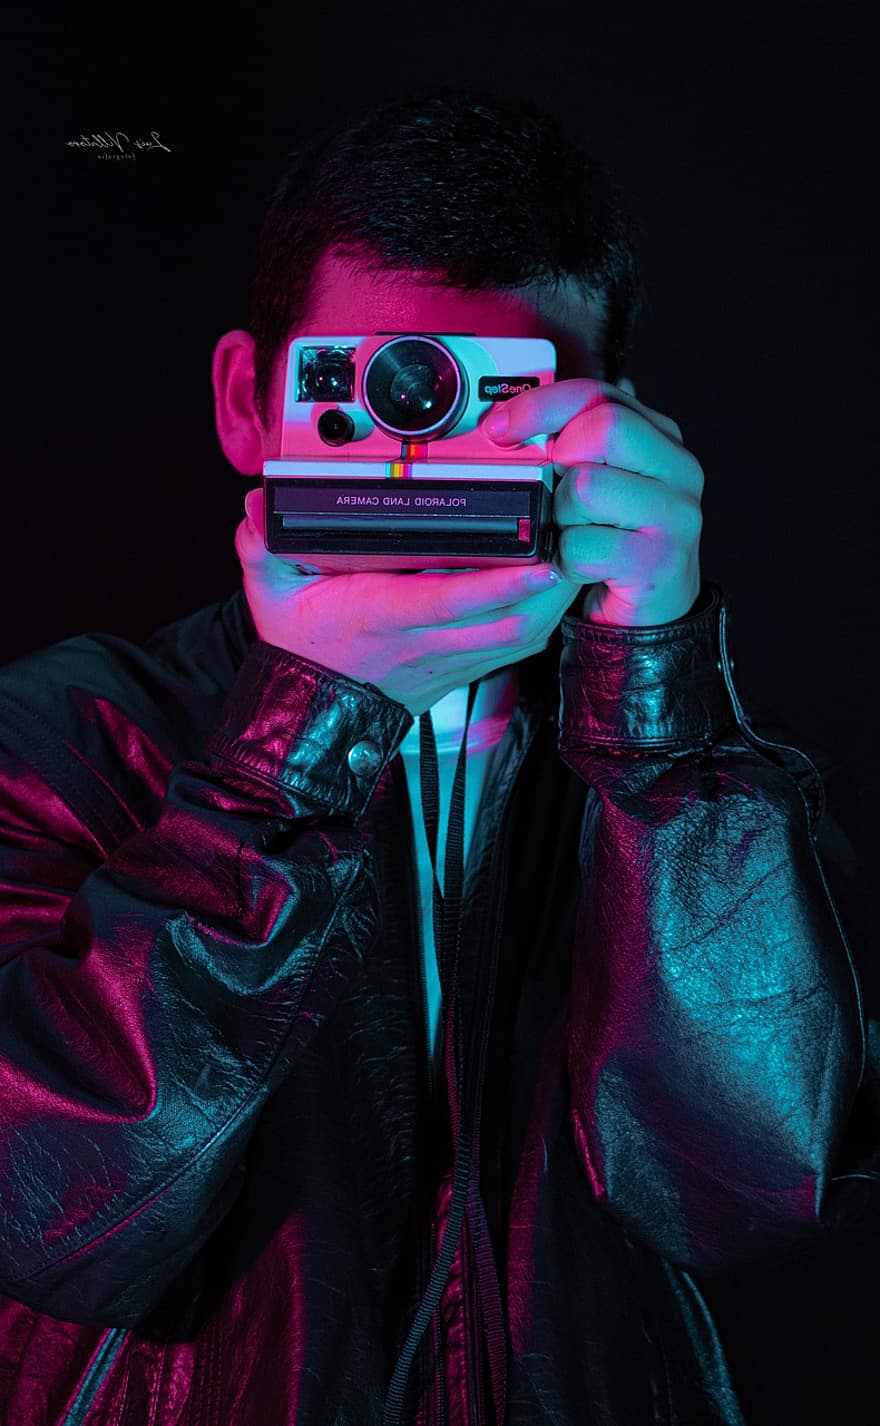 hombre, cámara, polaroid, capturar, cámara Polaroid, toma de fotografías, fotografía, fotógrafo, retrato, hombre joven